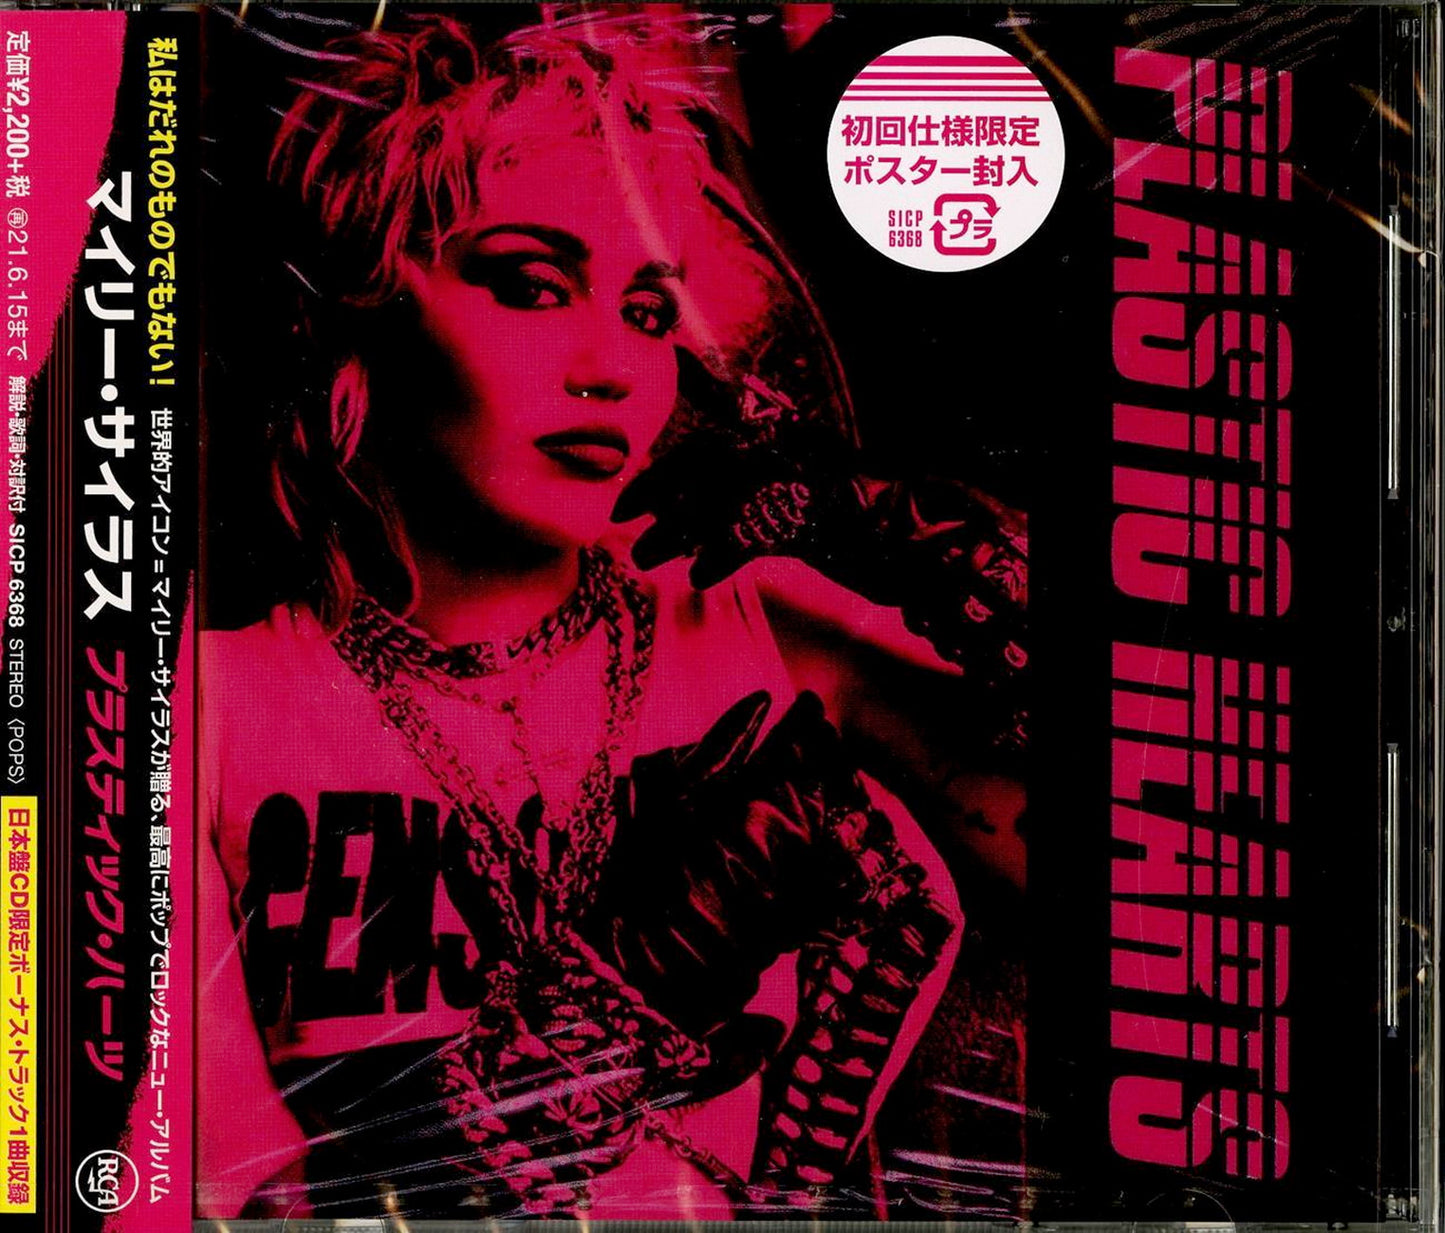 Miley Cyrus - Untitled - Japan  CD Bonus Track